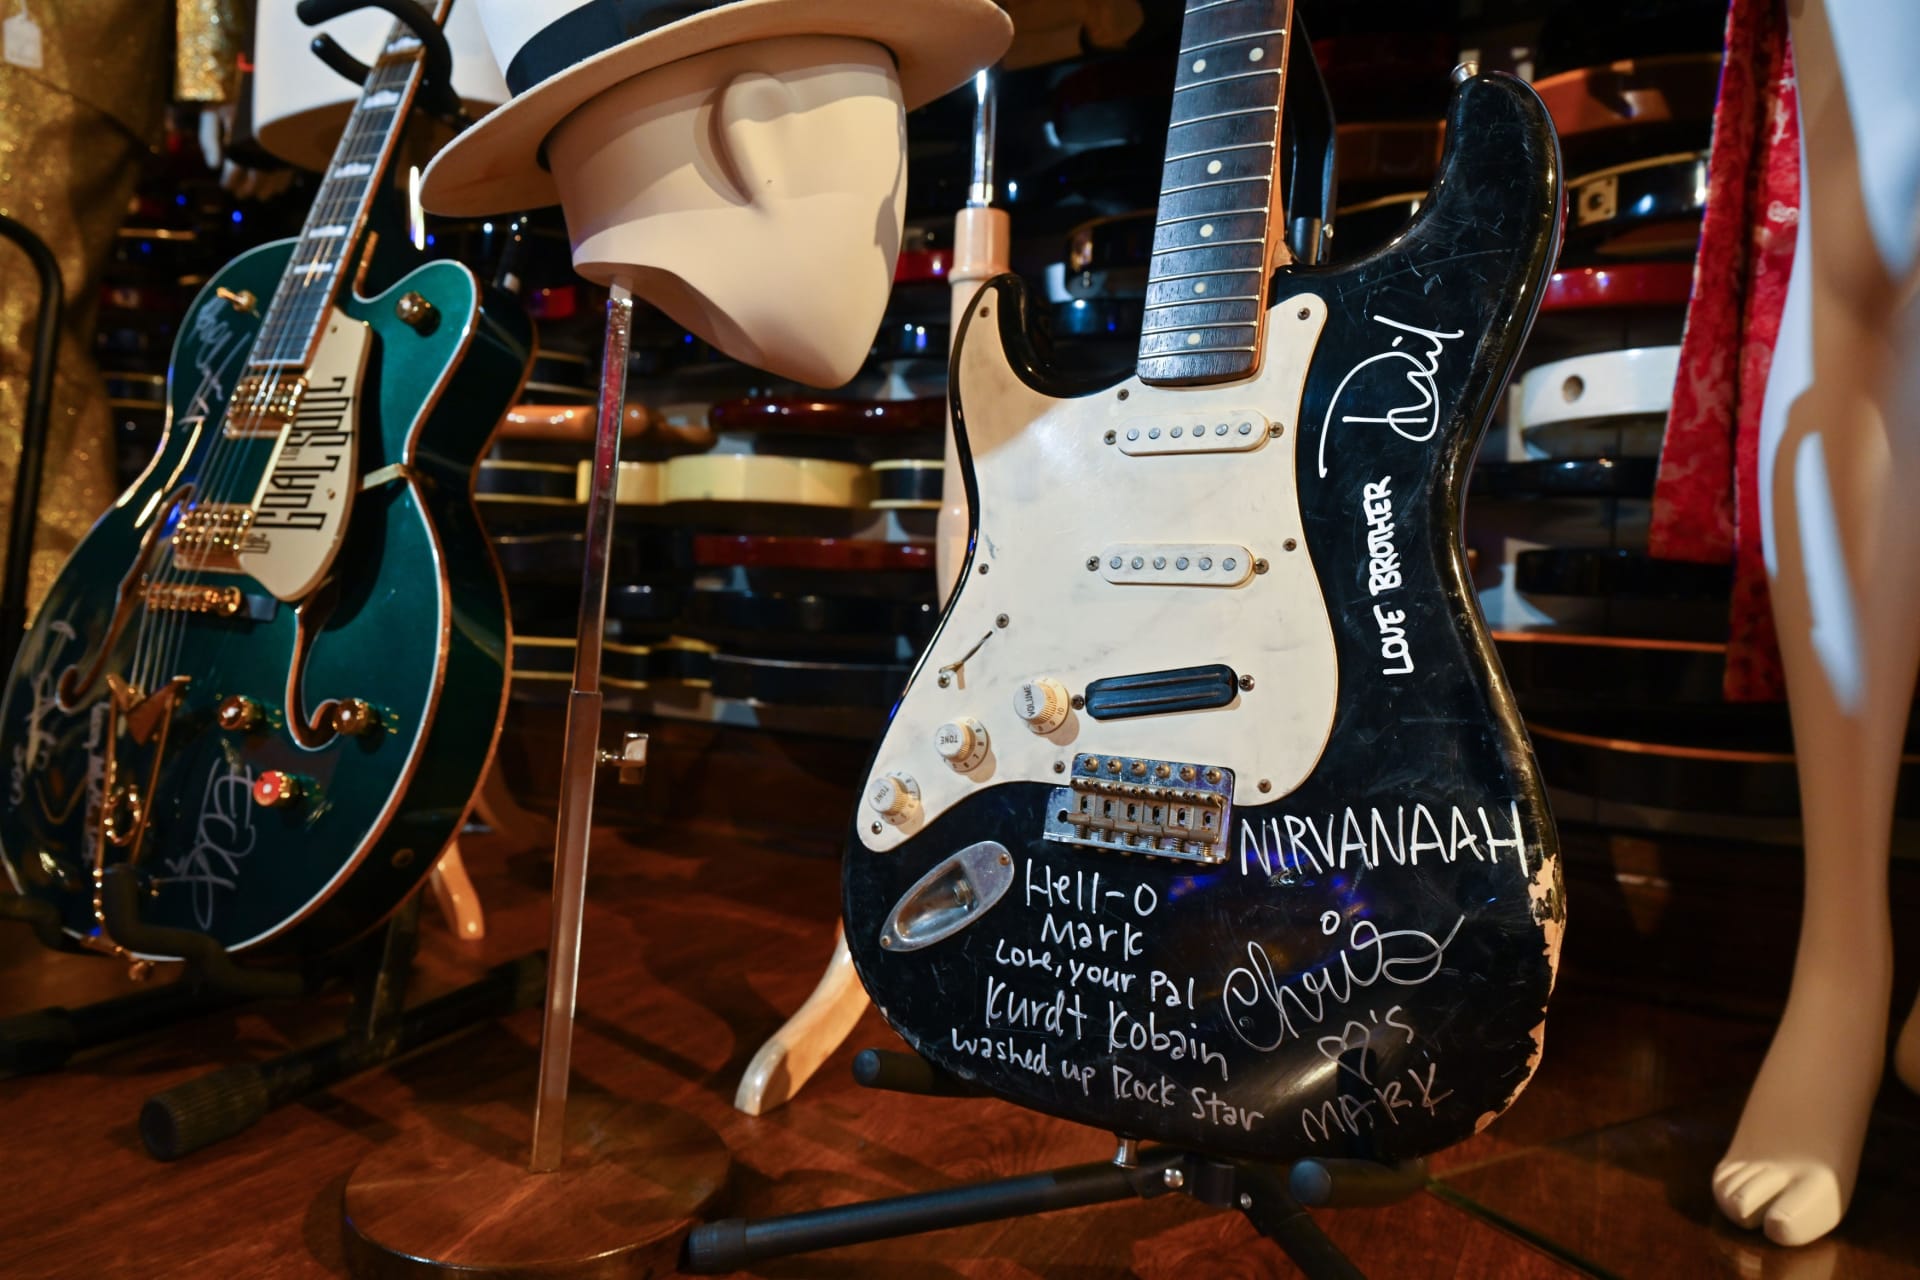 Fender Stratocaster šel do prodeje s odhadovanou cenou 60 000 až 80 000 dolarů. Závěrečnou nabídku ve výši 596 900 dolarů označila aukční síň za ohromující. Totožnost kupce není známa.